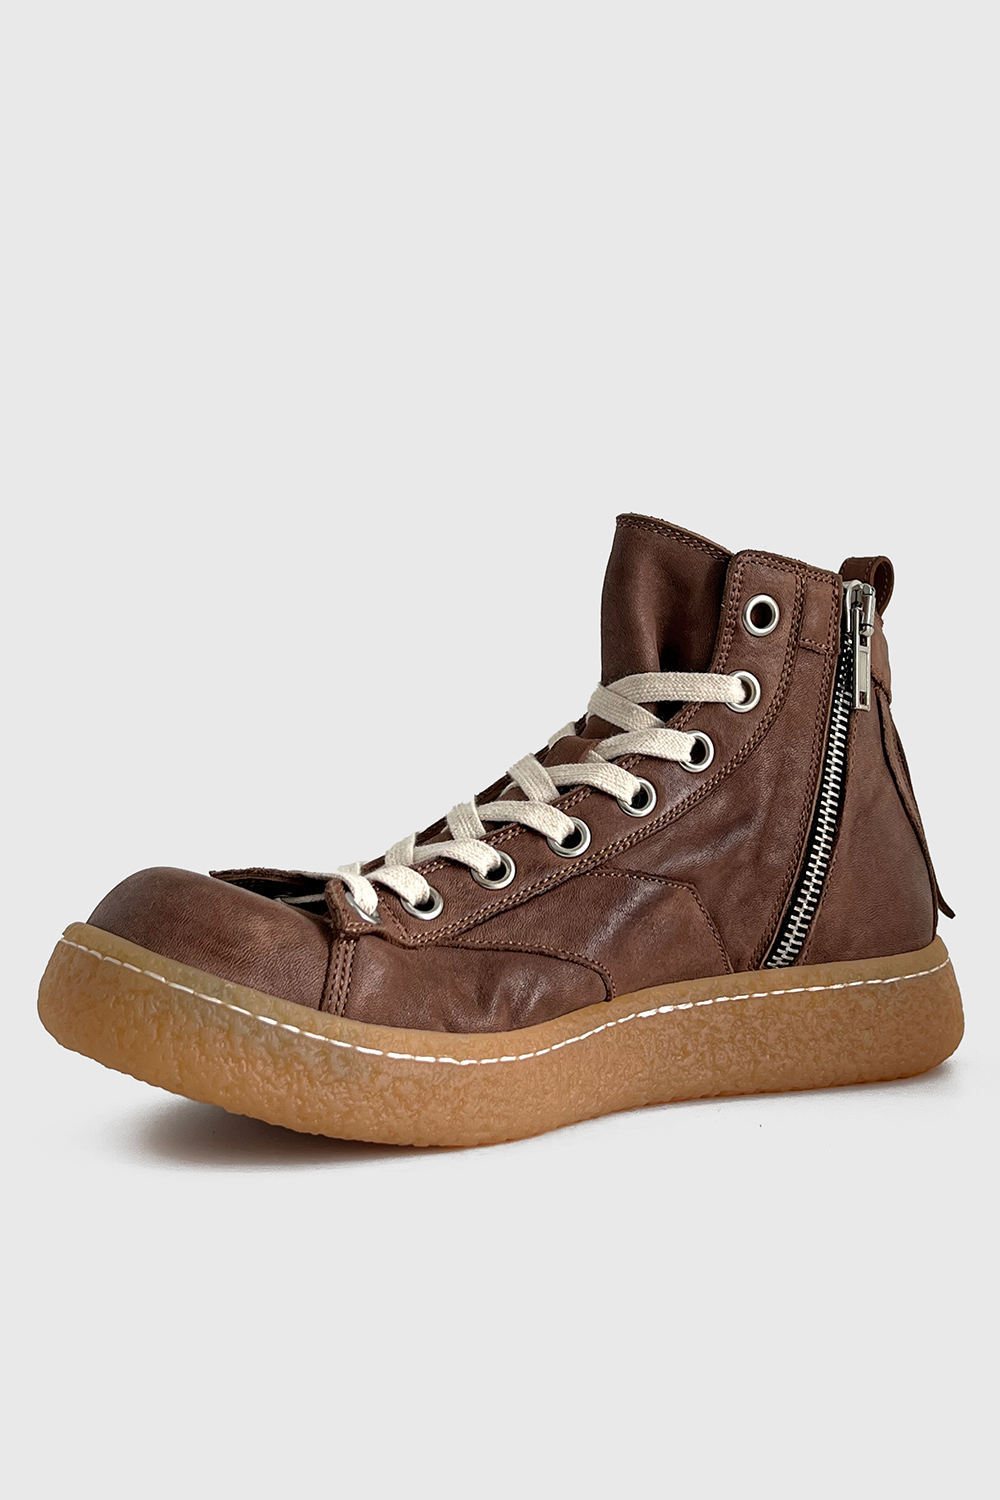 [이모셔널 스니커즈] Horse leather Mid_Vintage Brown